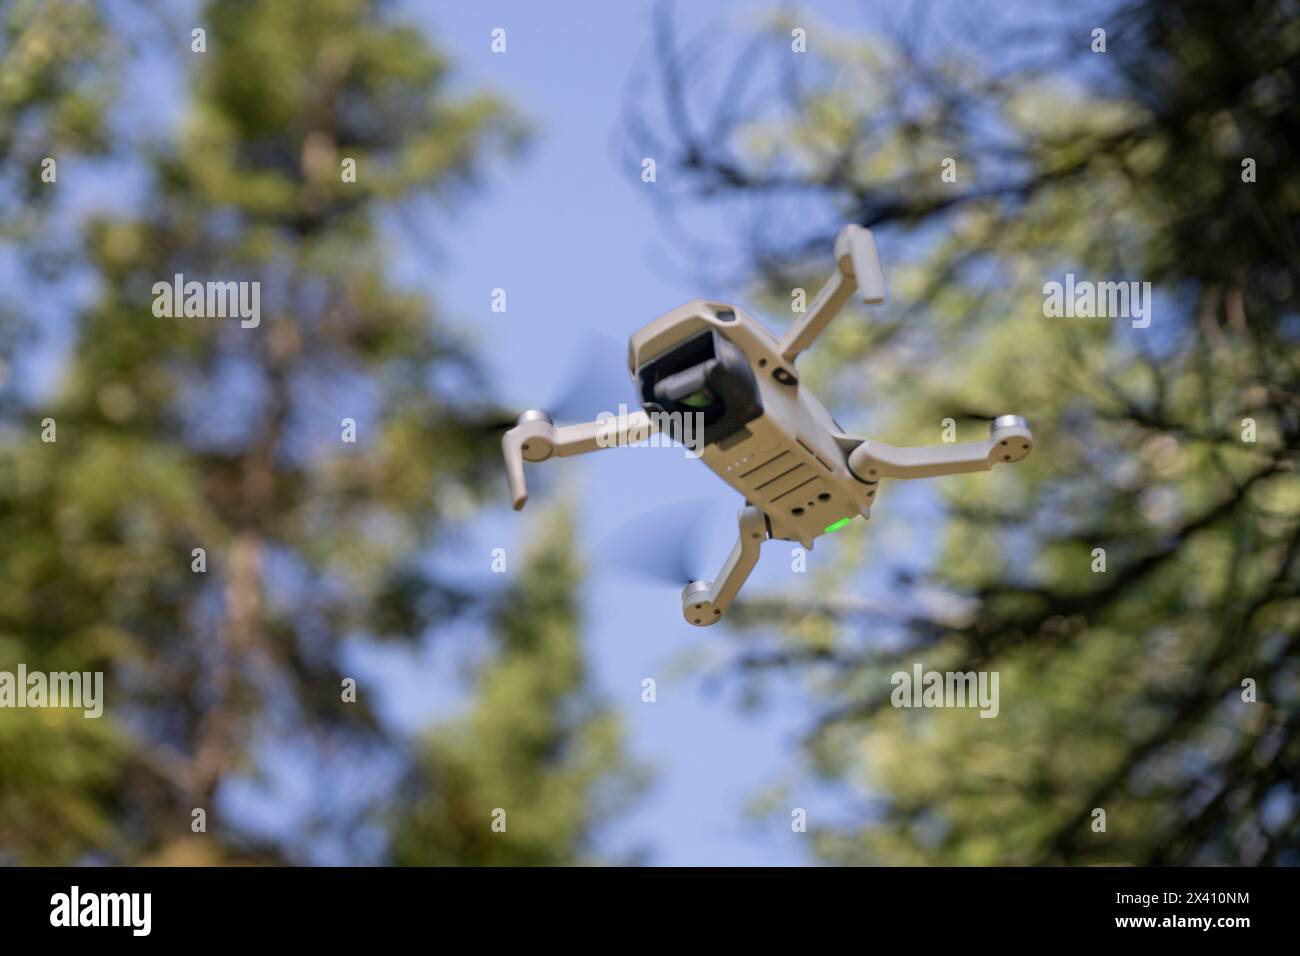 Die Drohne schwebt in der Luft unter Bäumen und blauem Himmel; Lake of the Woods, Ontario, Kanada Stockfoto